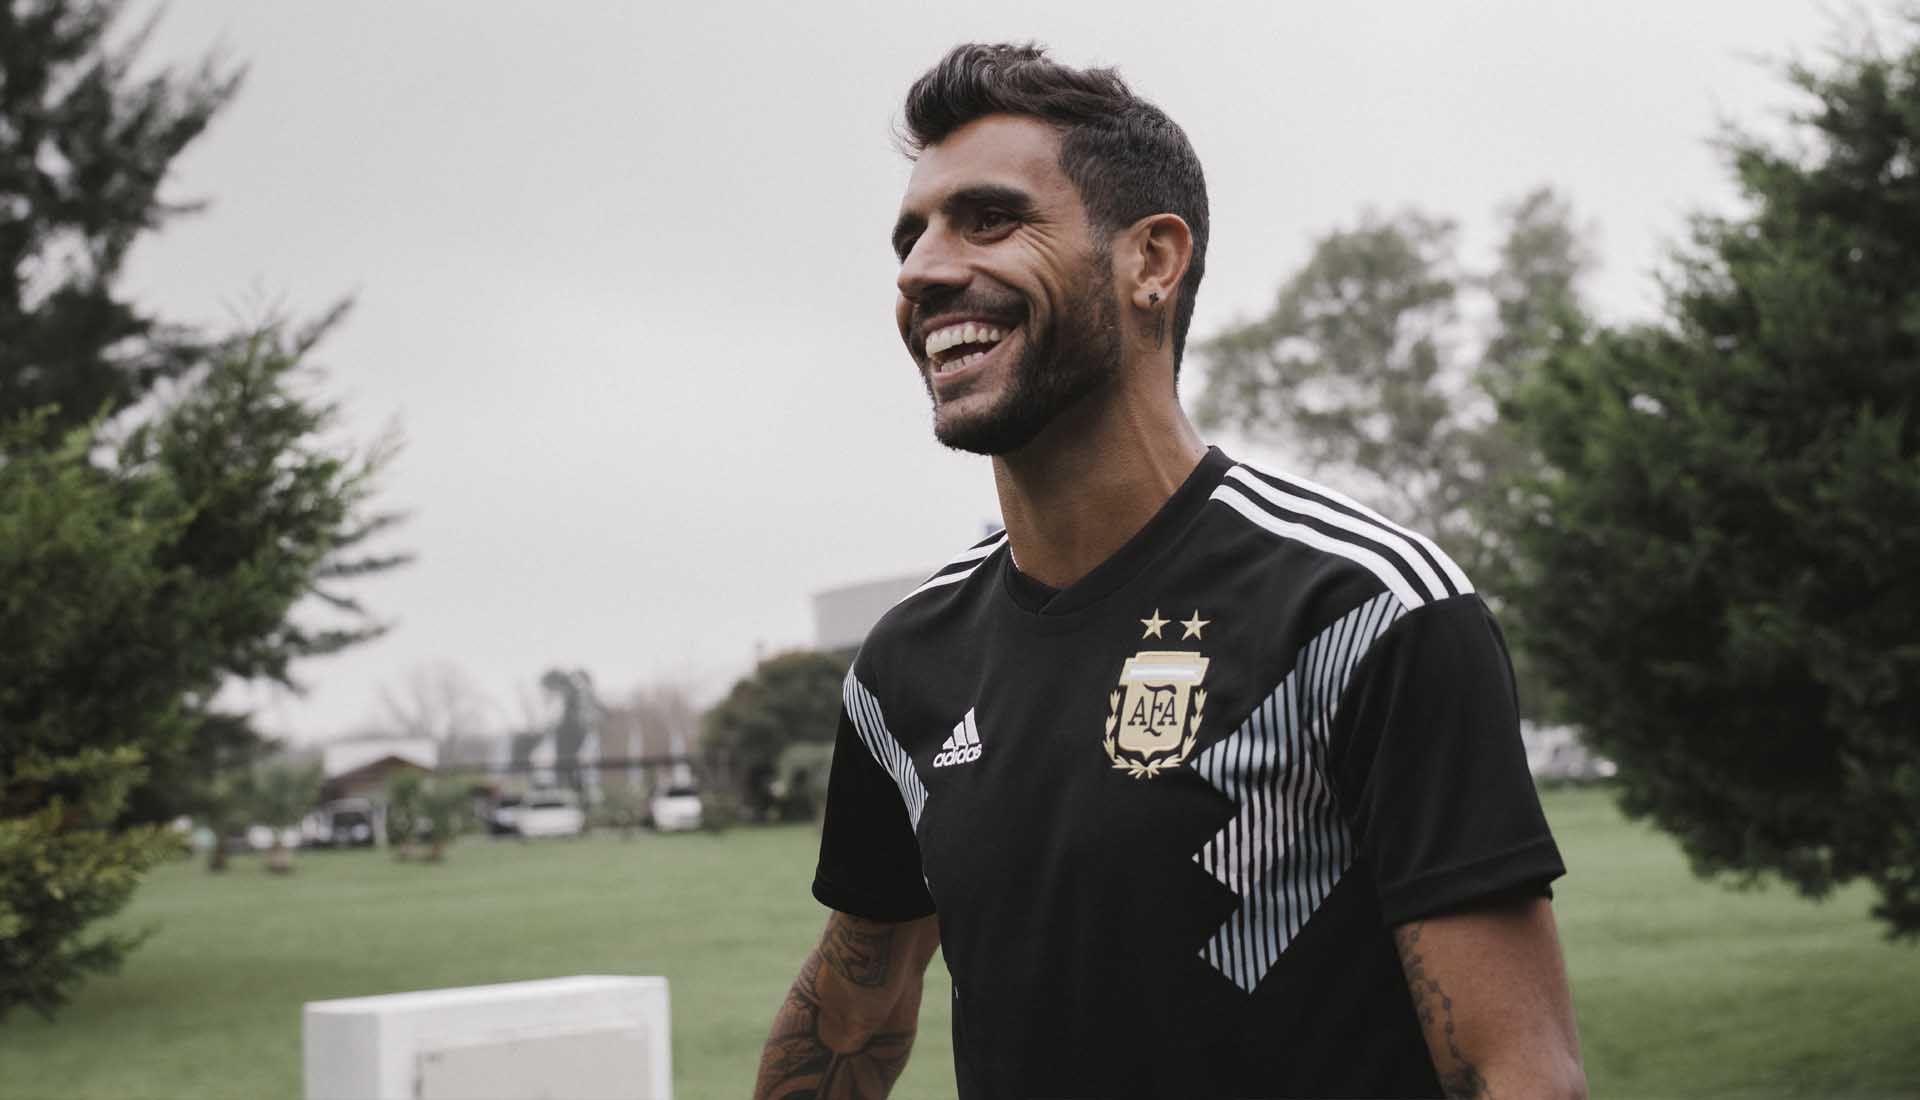 argentina away shirt 2018